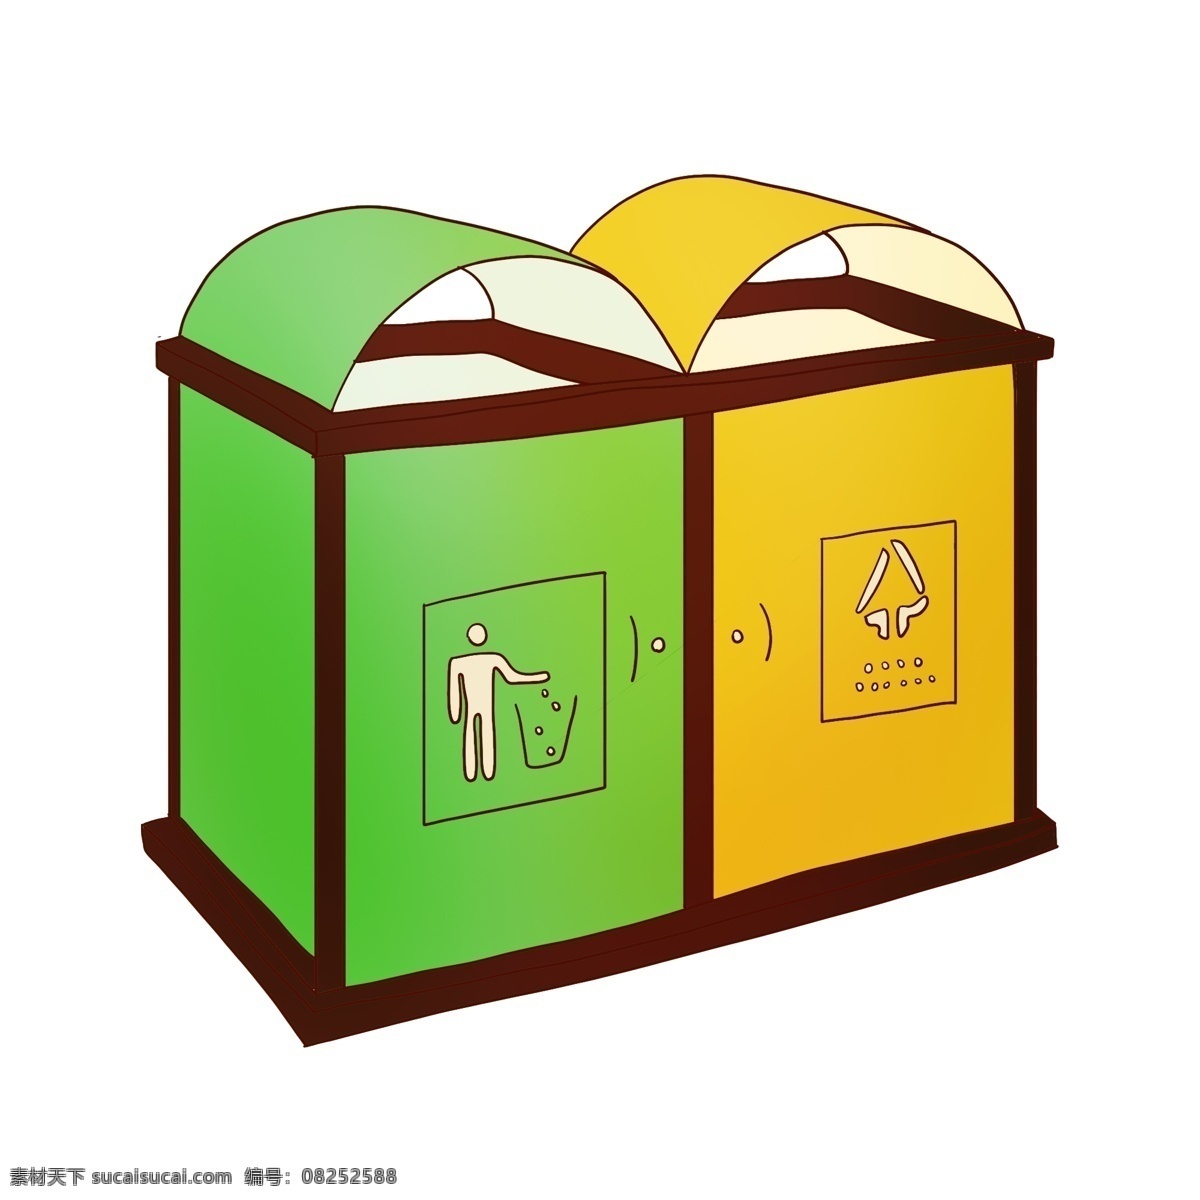 手绘 卡通 环保 垃圾桶 插画 手绘垃圾桶 卡通垃圾桶 绿色的垃圾桶 黄色的垃圾桶 立式垃圾桶